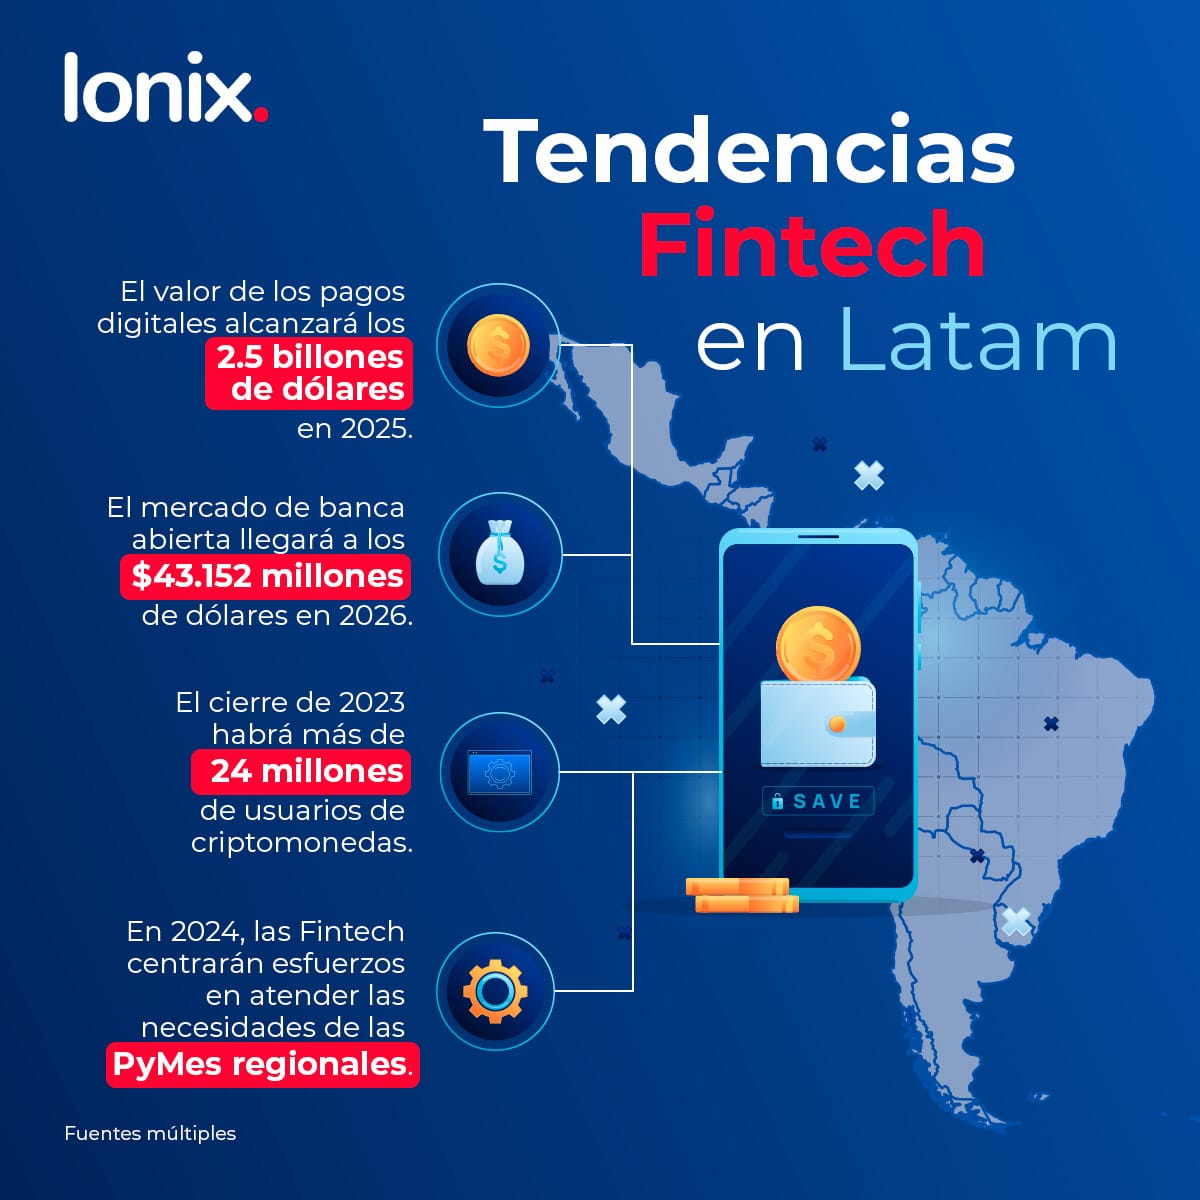 Tendencias Fintech en Latam, algunas estadísticas de su potencial crecimiento. El valor de los pagos digitales alcanzará los 2.5 billones de dólares en 2025. El mercado de la banca abierta llegará a los 43.152 millones de dólares en 2026. 